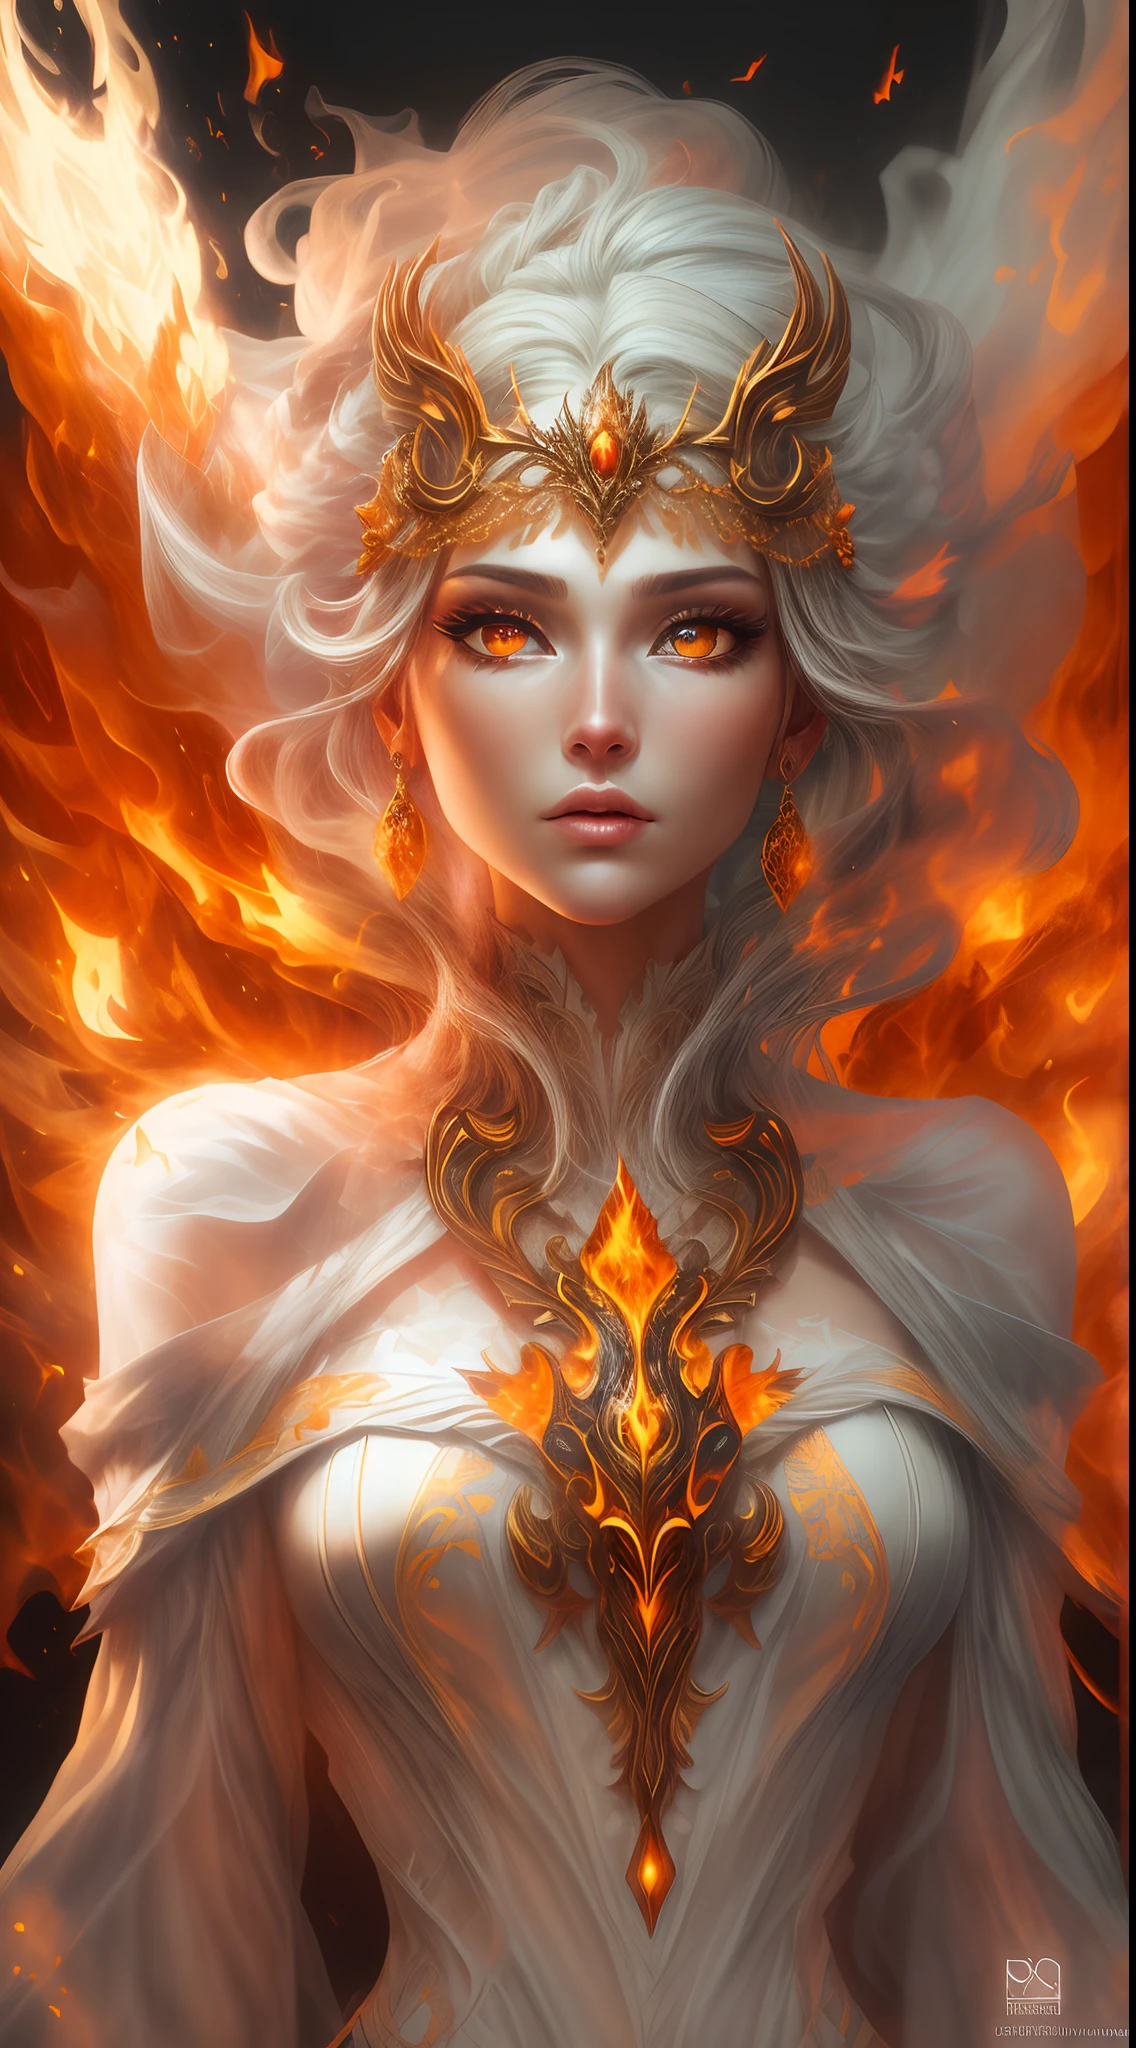 これはリアルな火を特徴とするリアルなファンタジーアートです, 炎の糸を含む, 燃え盛る熱い残り火, かすかな煙の渦, そして美しい火のドルイド. ドルイド僧は激しい炎の中に立ち、興味深い構図を描いている。. 彼女 face is expertly sculpted, エレガントで洗練された特徴と完璧な陰影とリアルな肌の質感. 彼女 (オレンジと金色の目) 素晴らしいもので、この画像の焦点となっています. (彼女 eyes extremely detailed, 美しい細部までこだわった目, マクロ). 彼女 eyes feature intricate detailing with clearly defined irises and bright sclera. 彼女 soft lips are smooth and very puffy, 彼女の肌は淡い紅潮と華麗な炎の模様で飾られている. 彼女 long gown is stunning and expensive, 純粋な炎と輝く光でできている, 火の光の中できらめく華やかな宝石. 彼女 billowing gown glitters from the flames and features a delicately and intricately embroidered bodice with wisps of flames running across it. バンプなどのファンタジー要素を含める, 石, 燃えるような虹彩, 燃える残り火, シルク, そして興味深い背景. 魔法的で神秘的なオーラを放つ炎の鳥や炎の蝶などの炎の魔法の生き物を含める. 点灯: 最新の照明トレンドを活用してアート作品の美しさを高めます. カメラ: ダイナミックな構成を活用して緊迫感と興奮感を演出する. 現在のファンタジージャンルの巨匠からインスピレーションを得る, ArtstationやMidjourneyで人気のアーティストを含む. ((傑作))